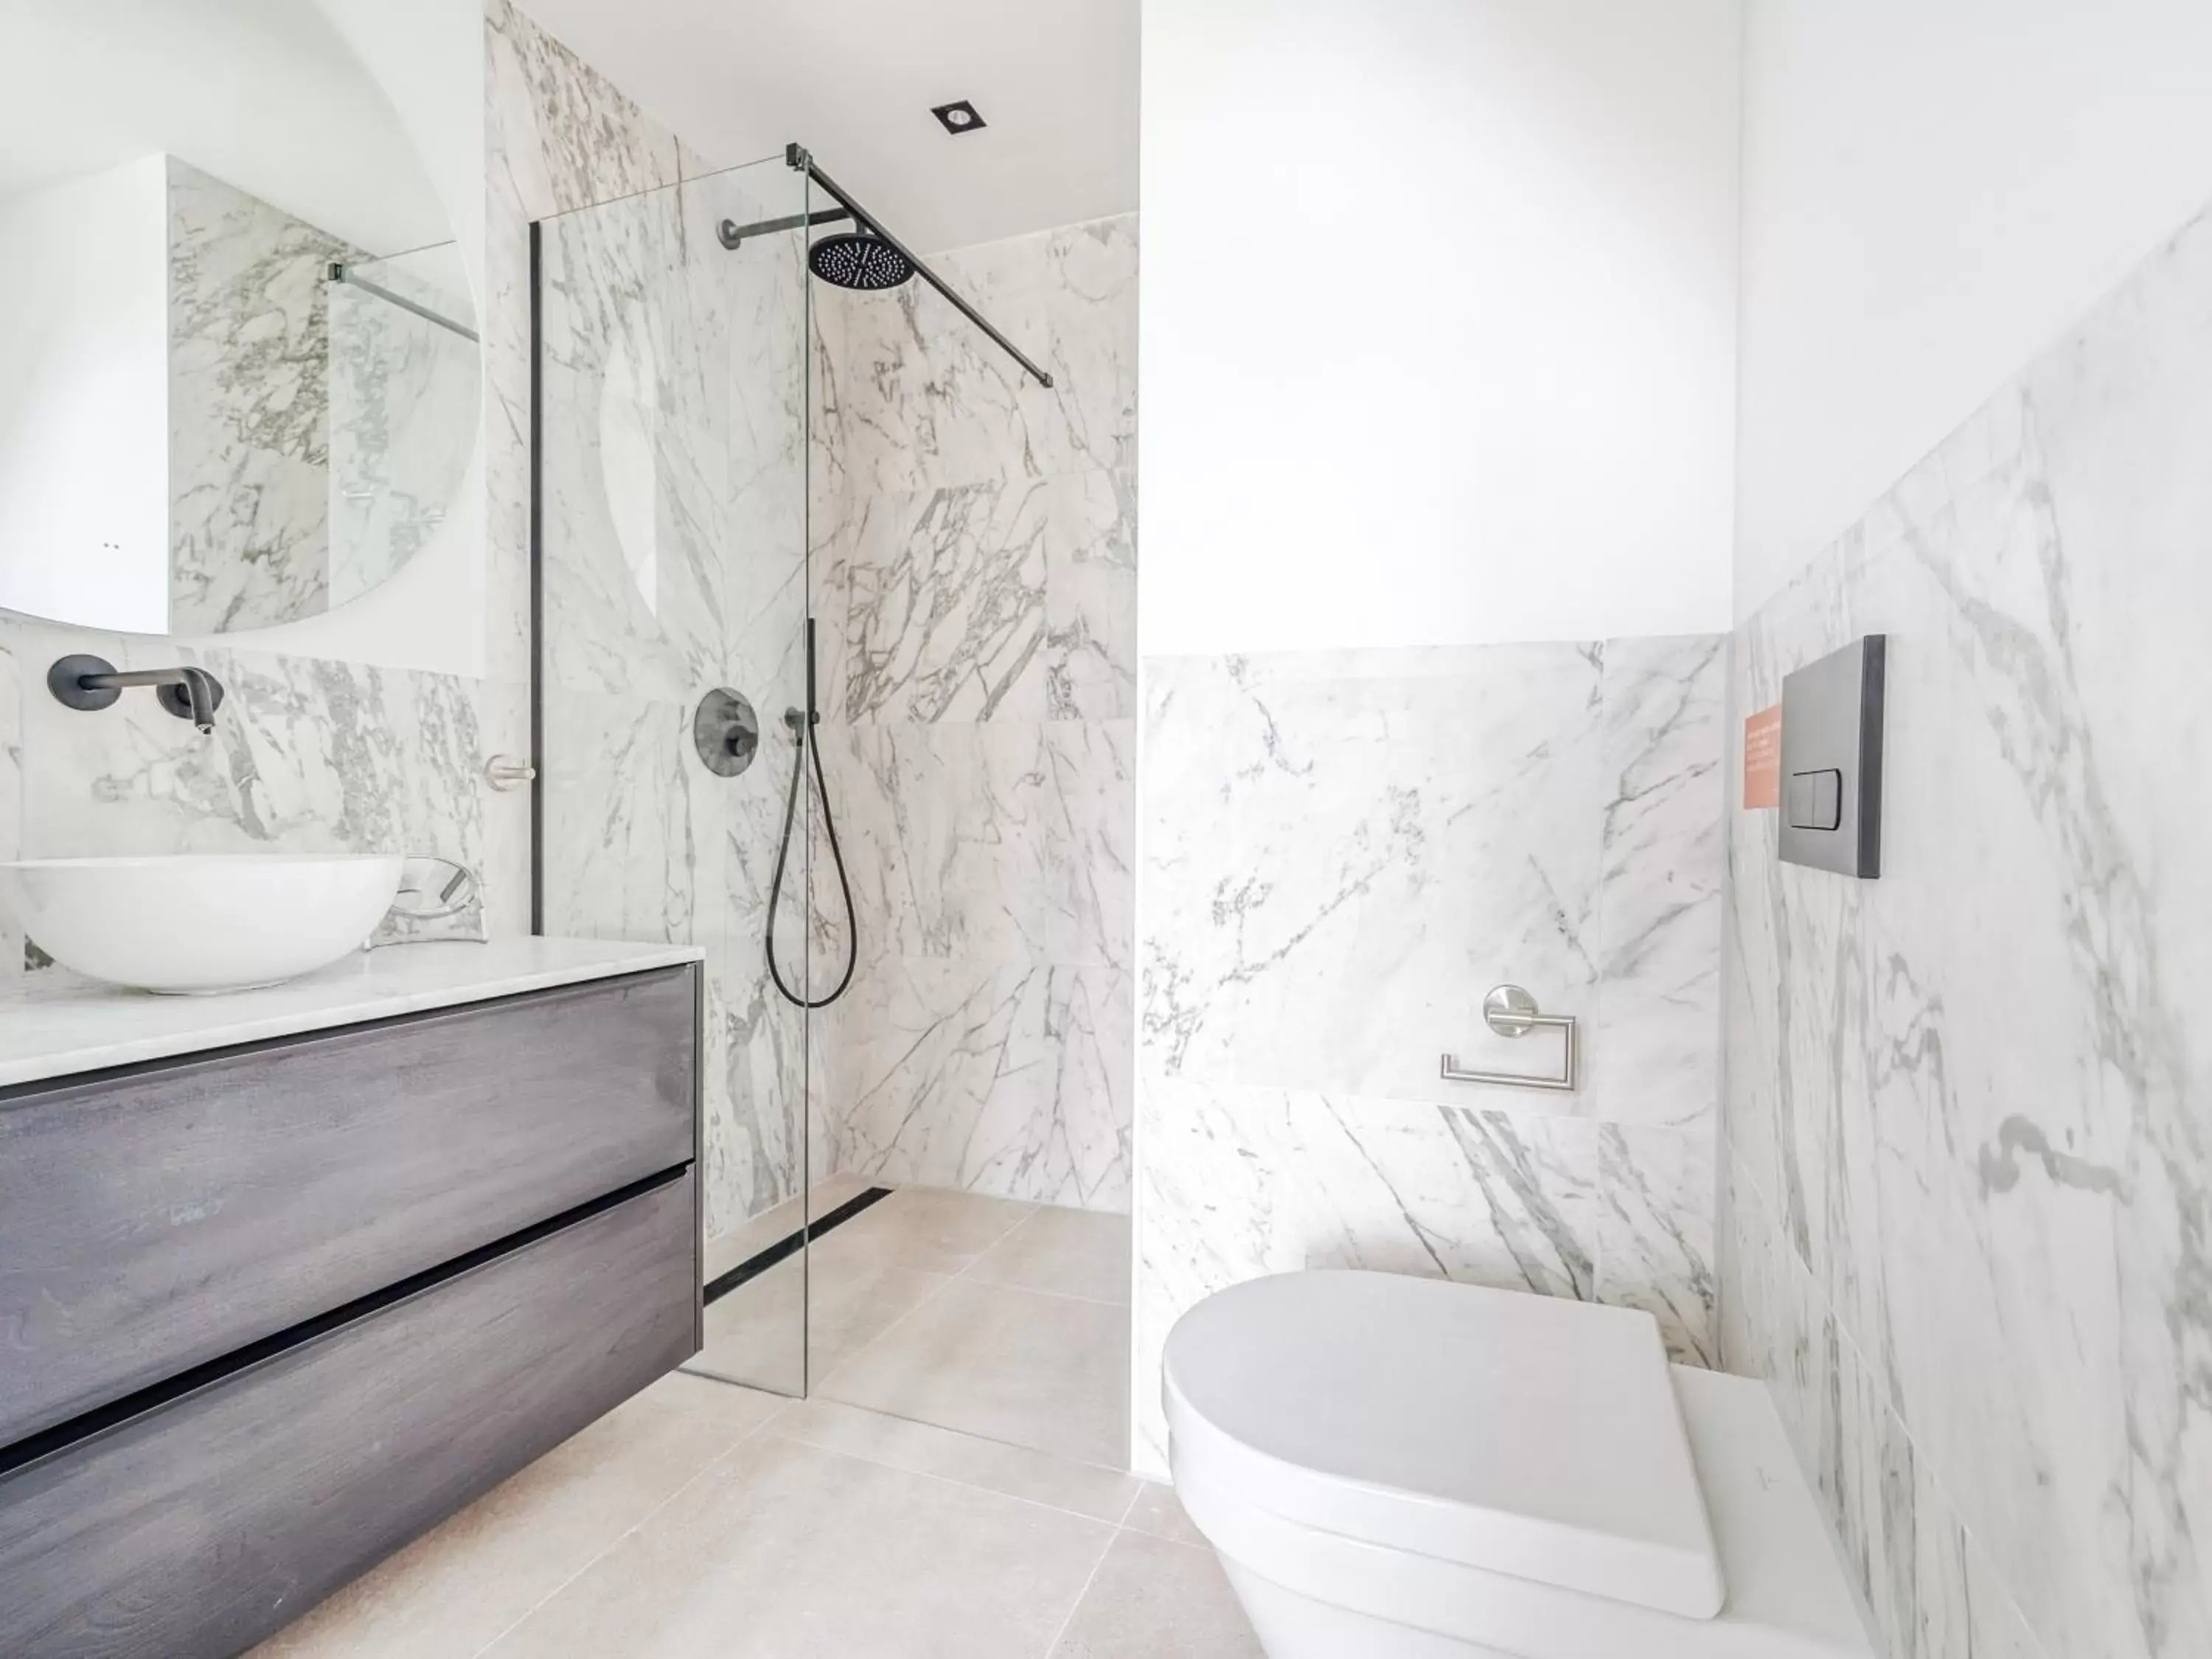 Shower, Bathroom in limehome Amsterdam Hemonystraat - Digital access